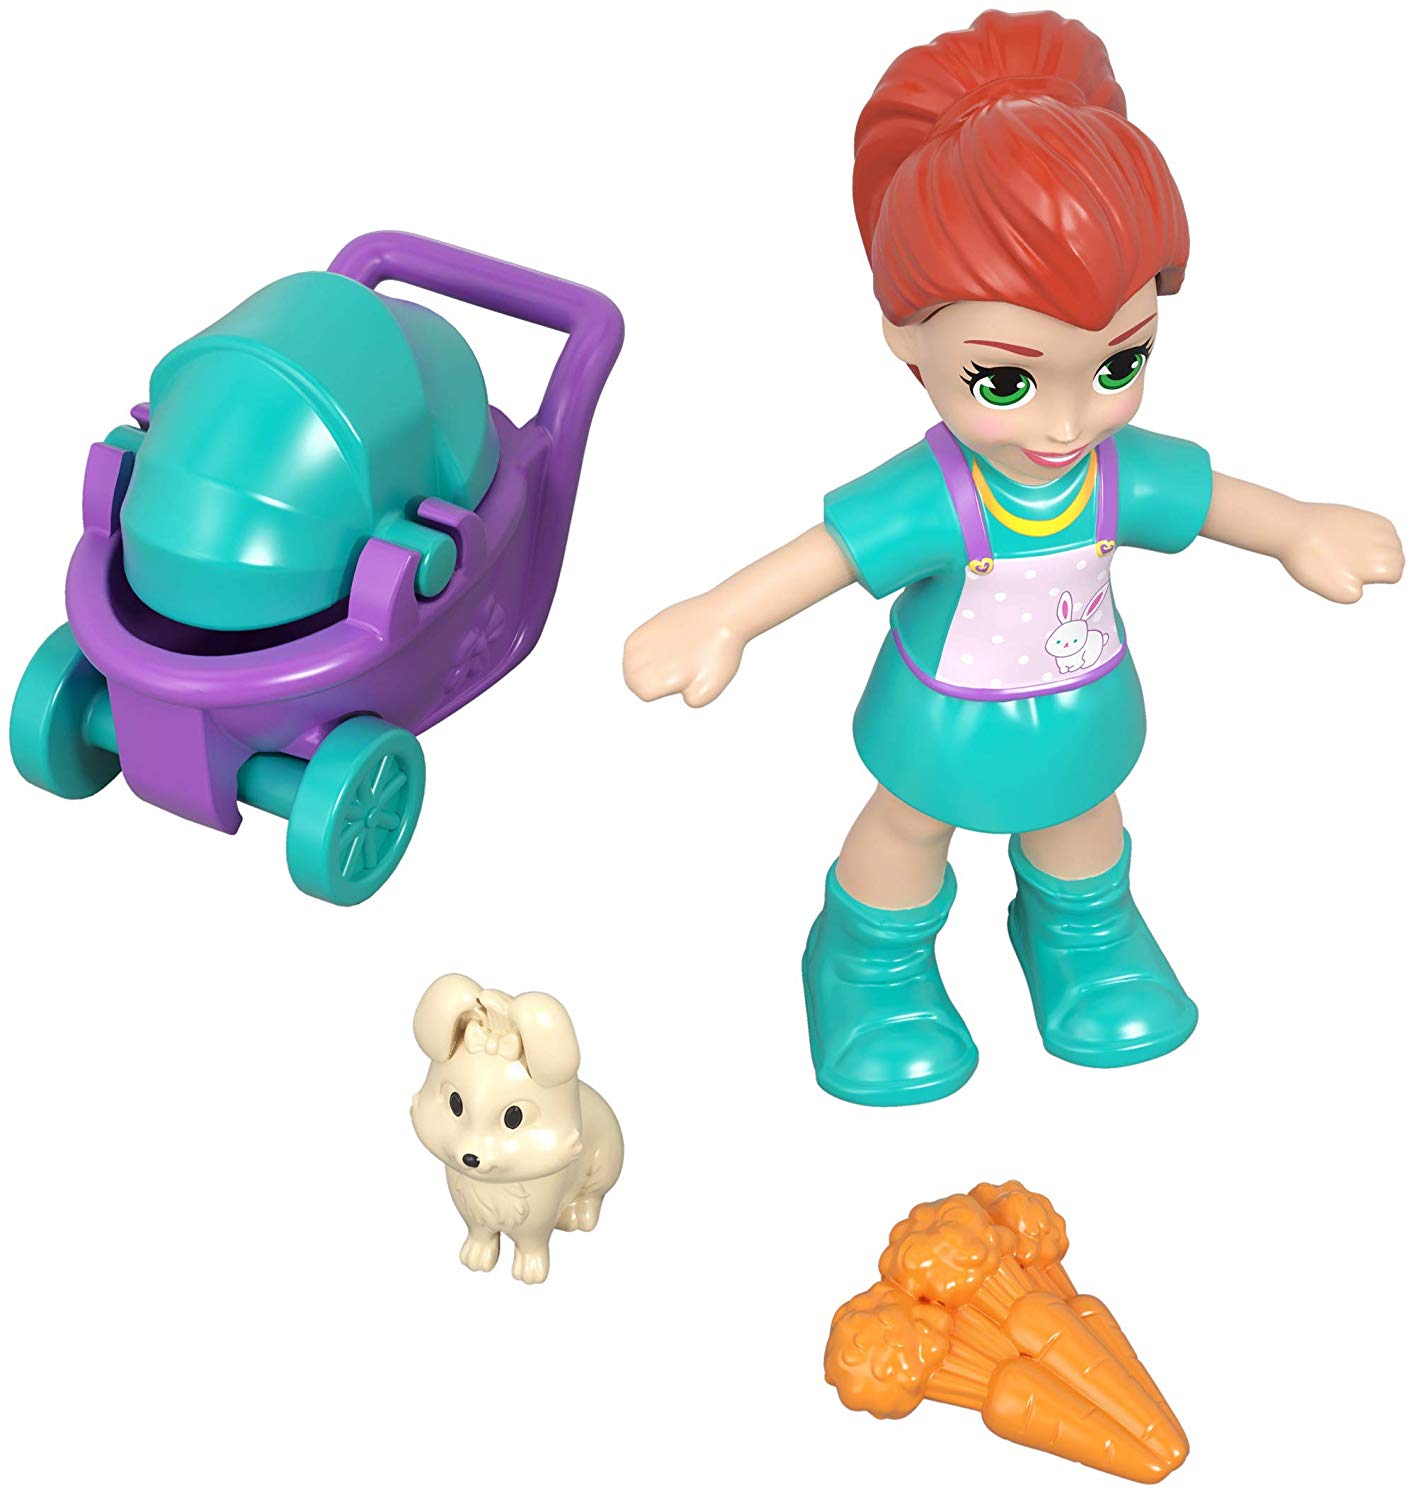 Polly Pocket il parchetto di Lila linea giocattoli tascabili idee regalo bambine natale